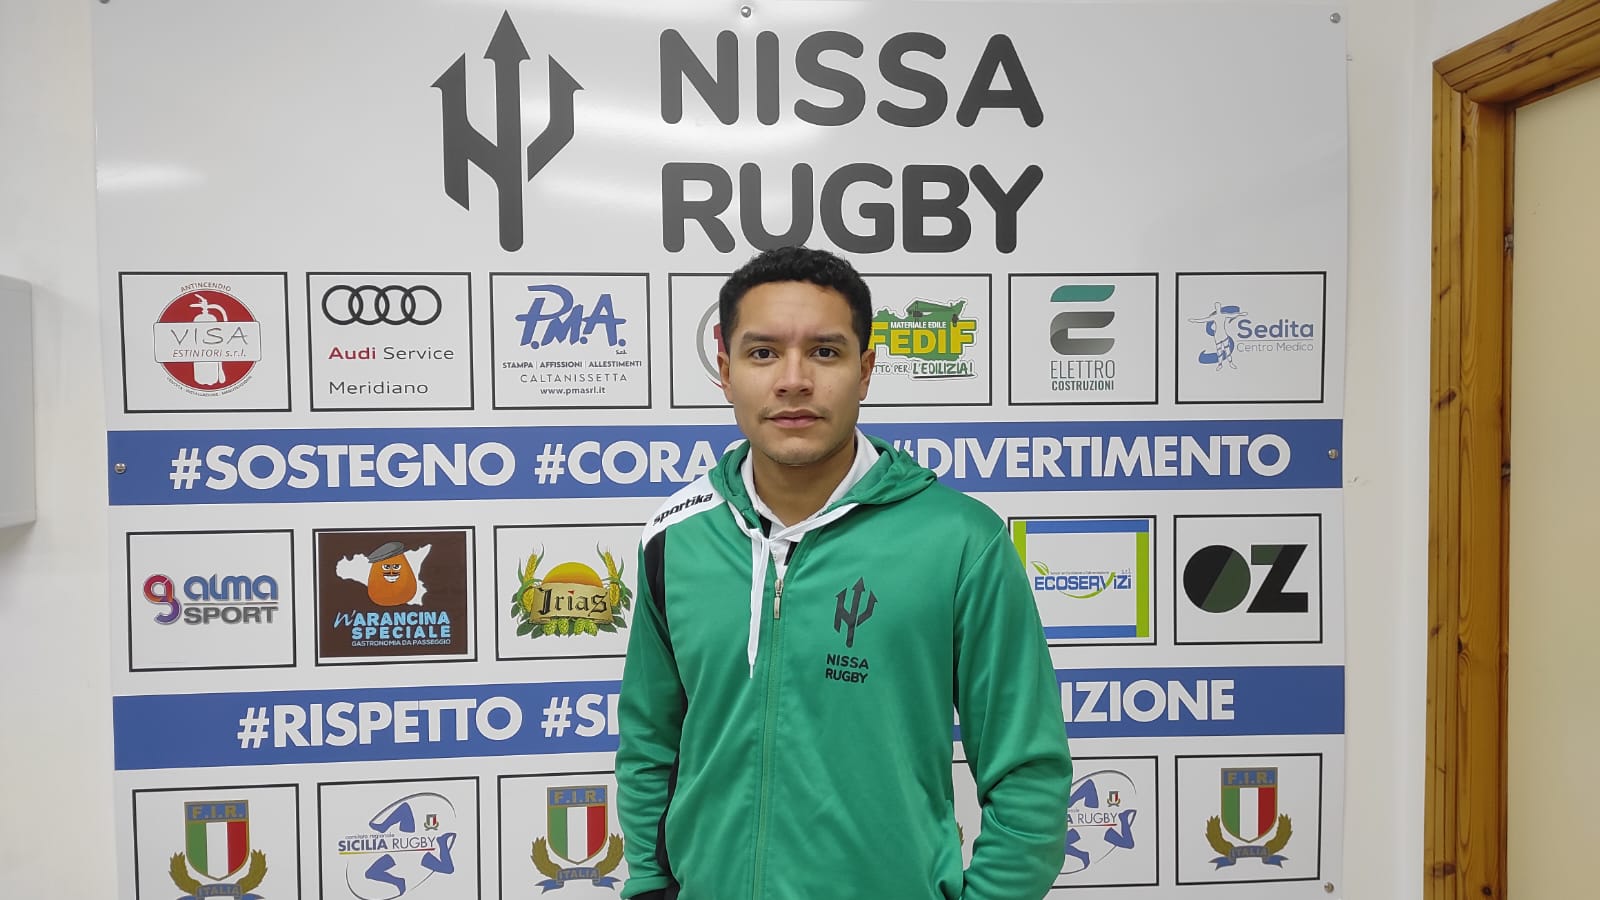 Nissa Rugby. Alberto Mendoza e la sua passione per la “palla ovale”